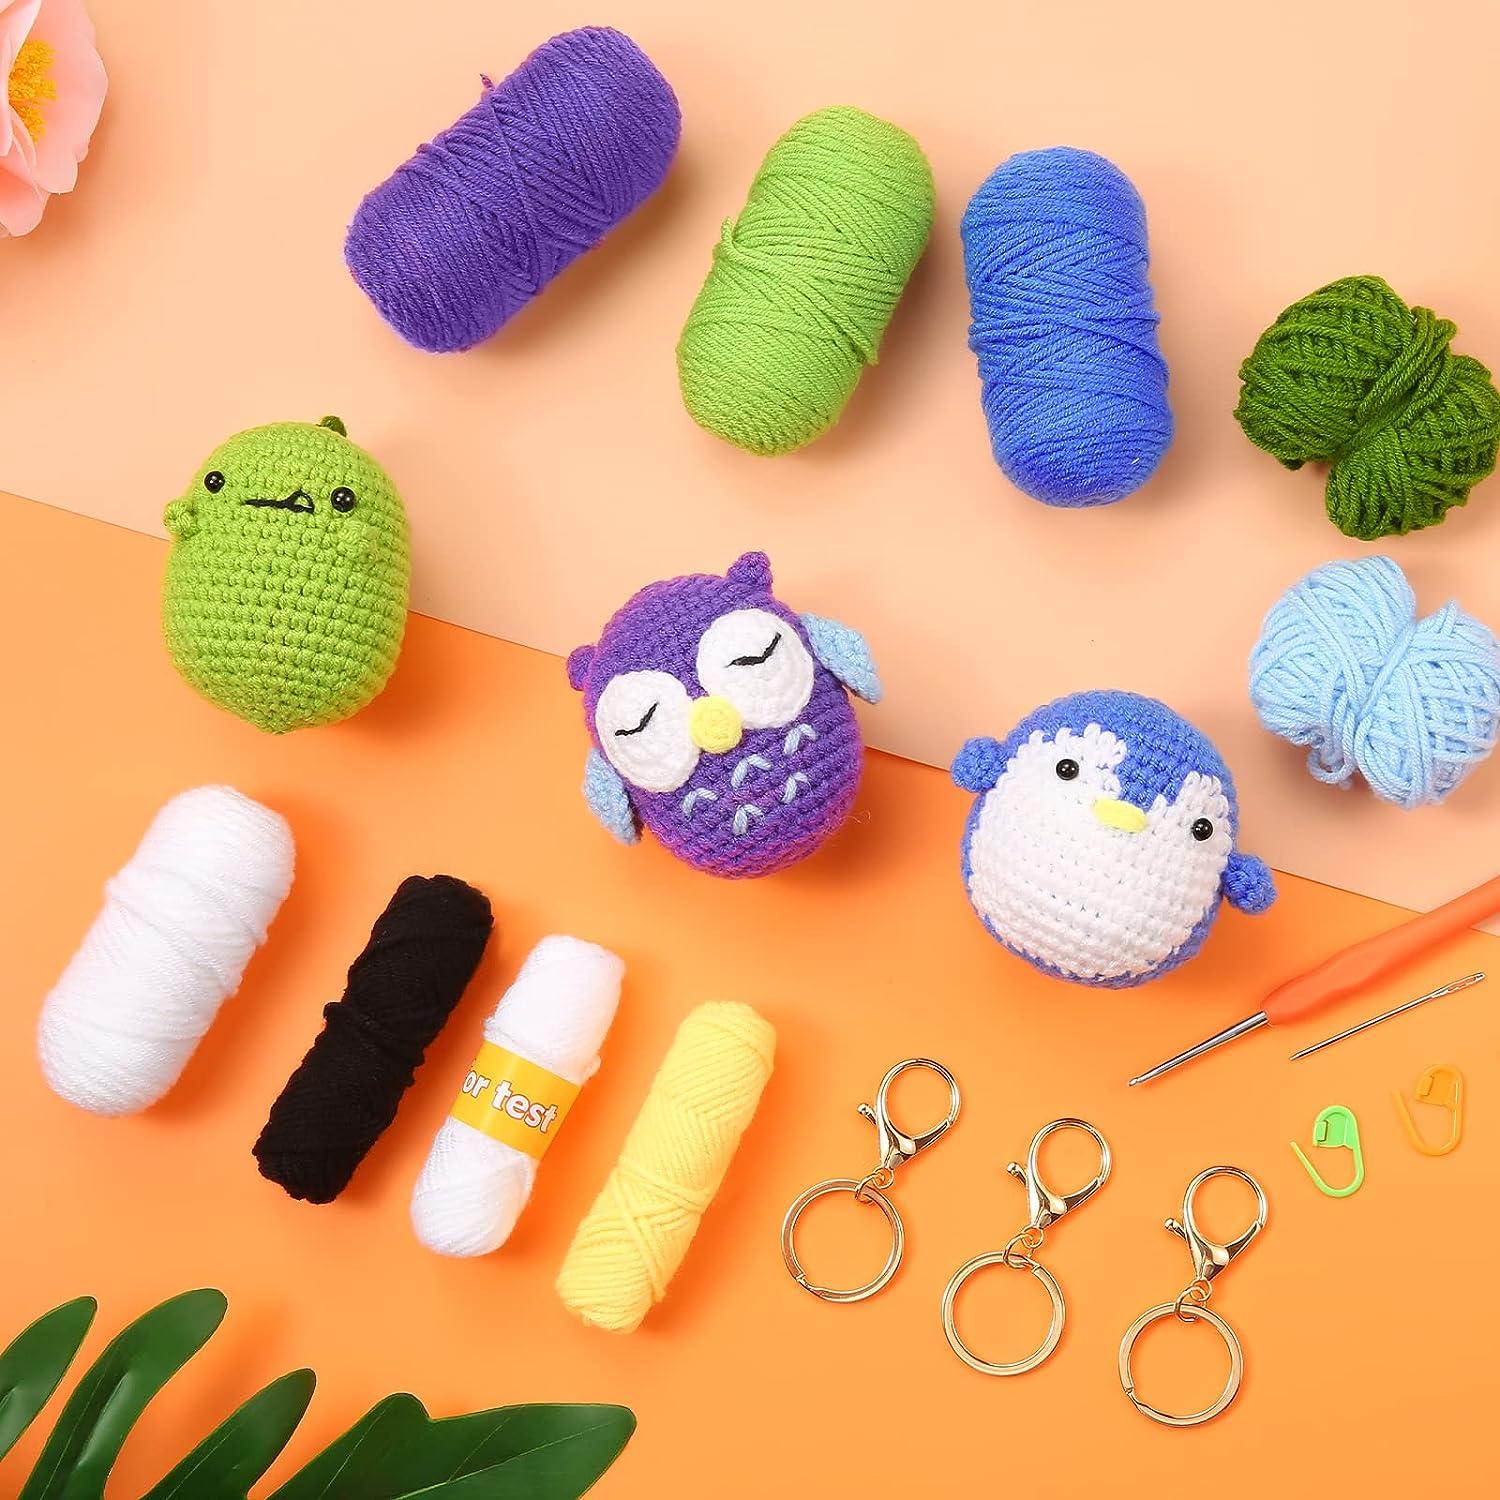  Crochet Kit for Beginners, Animal Crochet Starter Kit